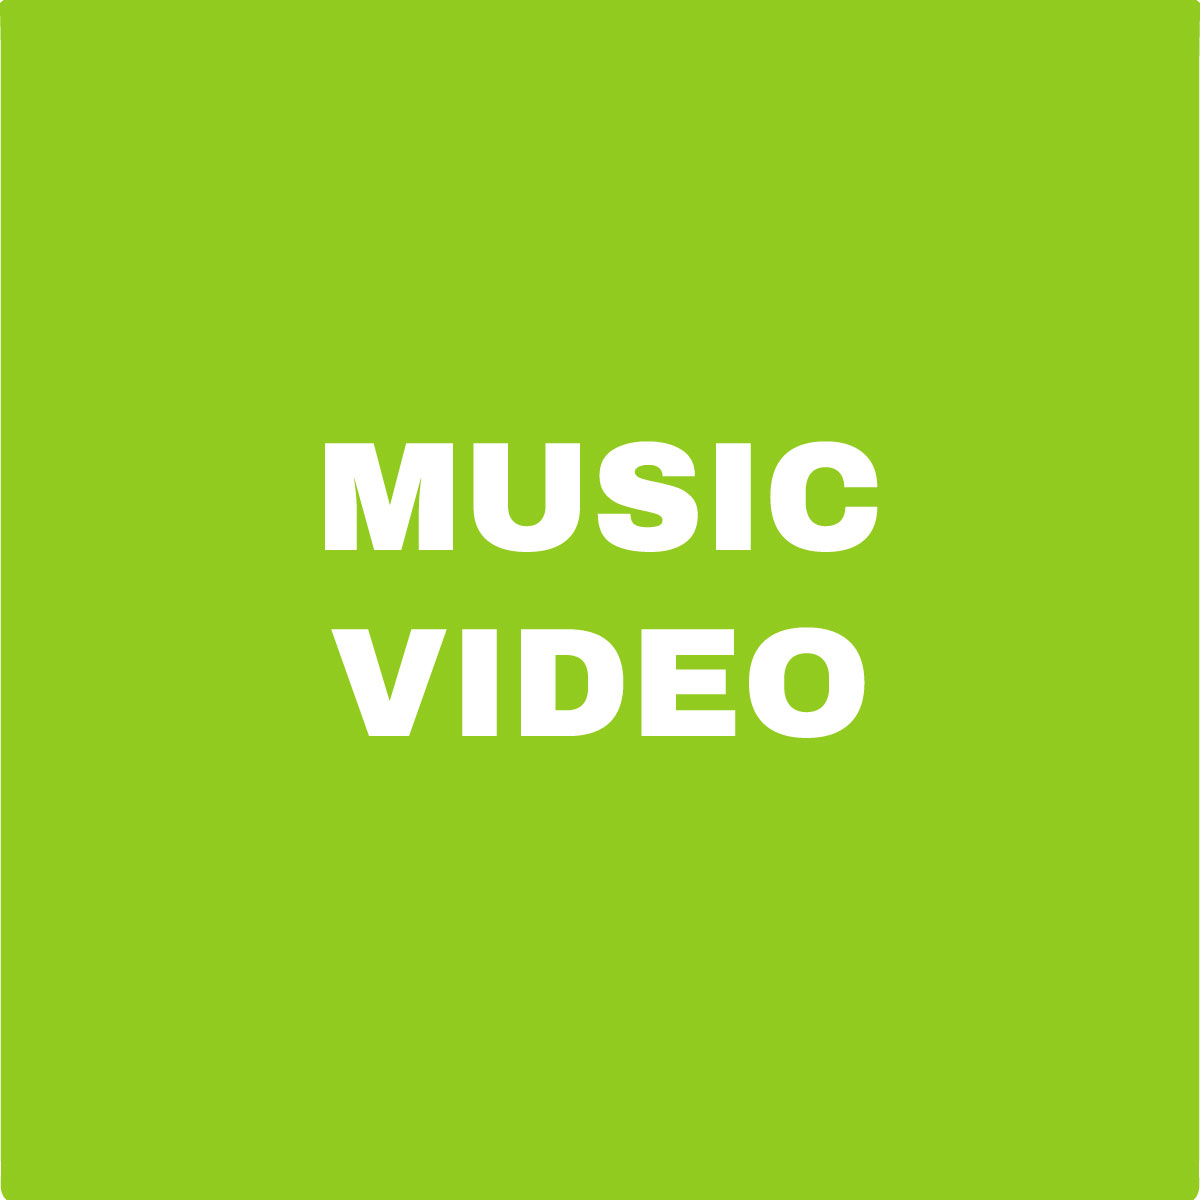 Music Video